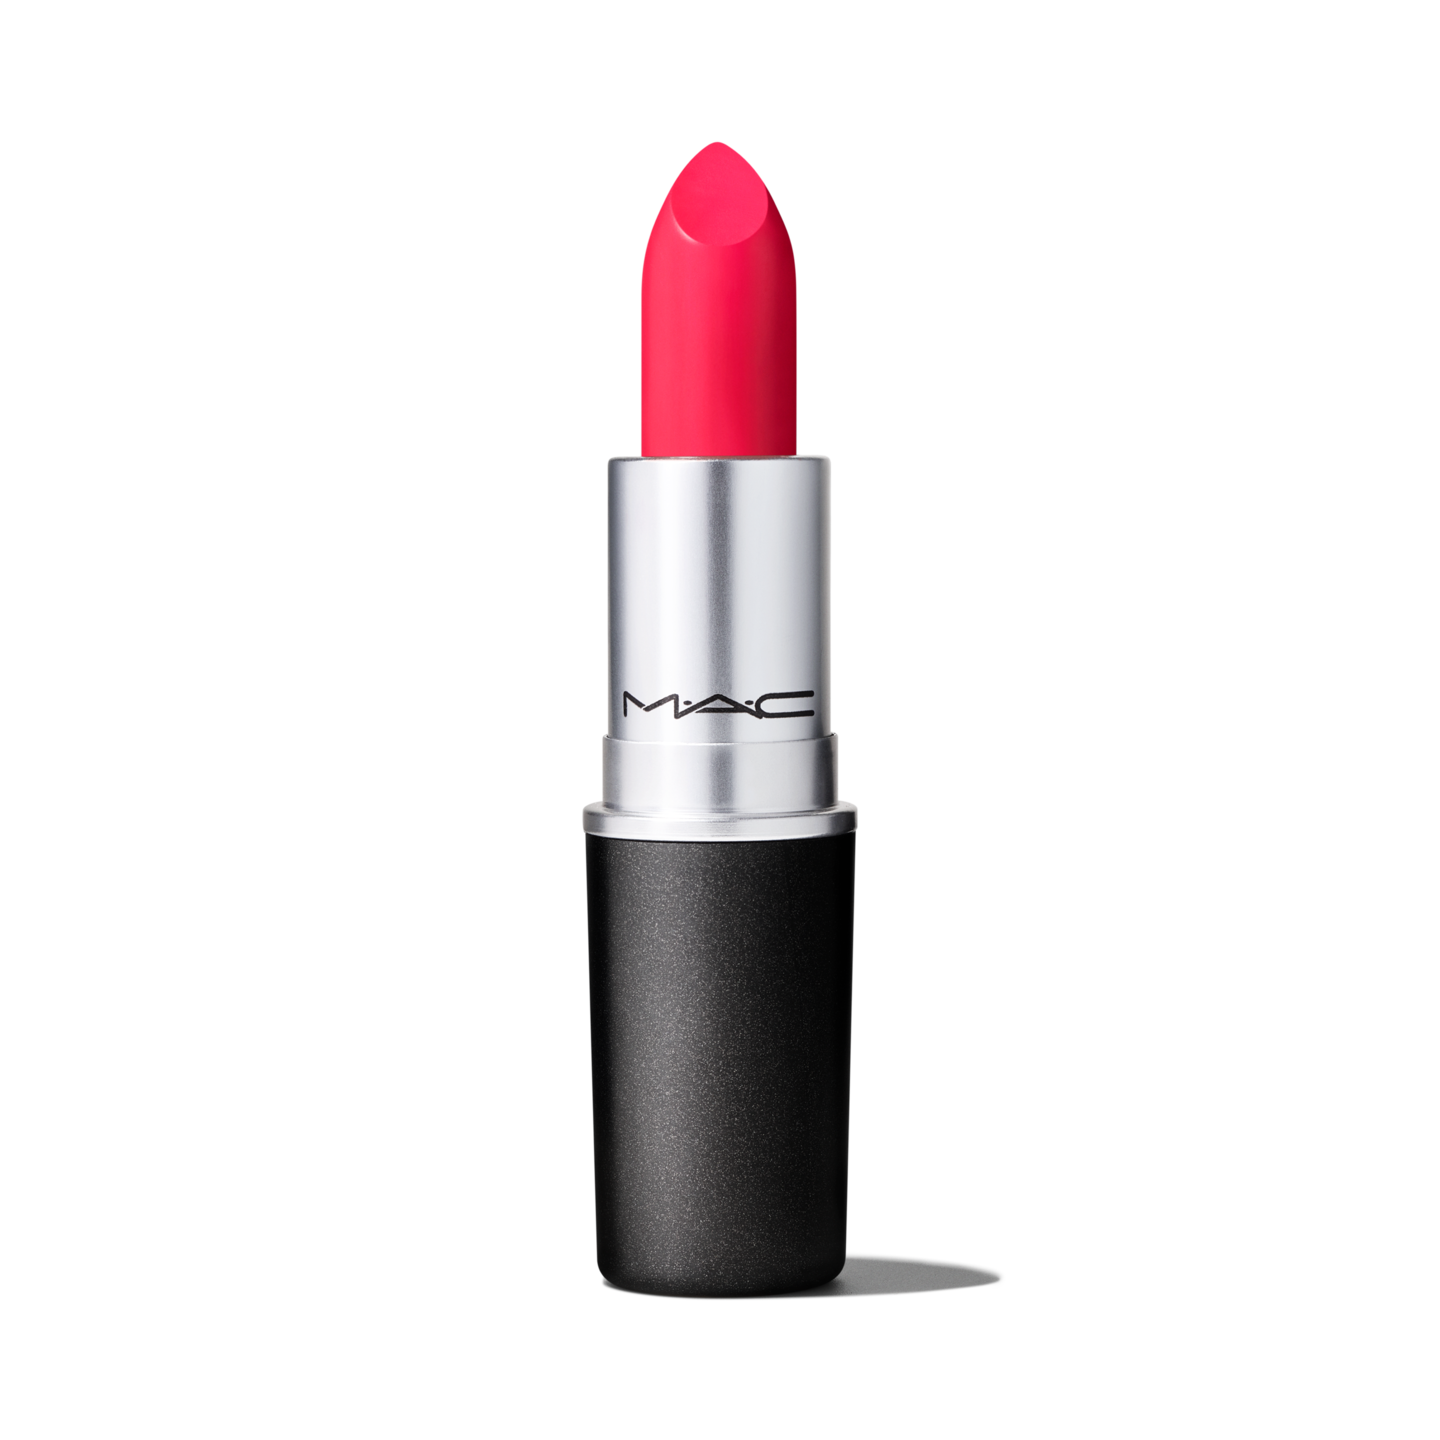 Lipstick - Wikipedia